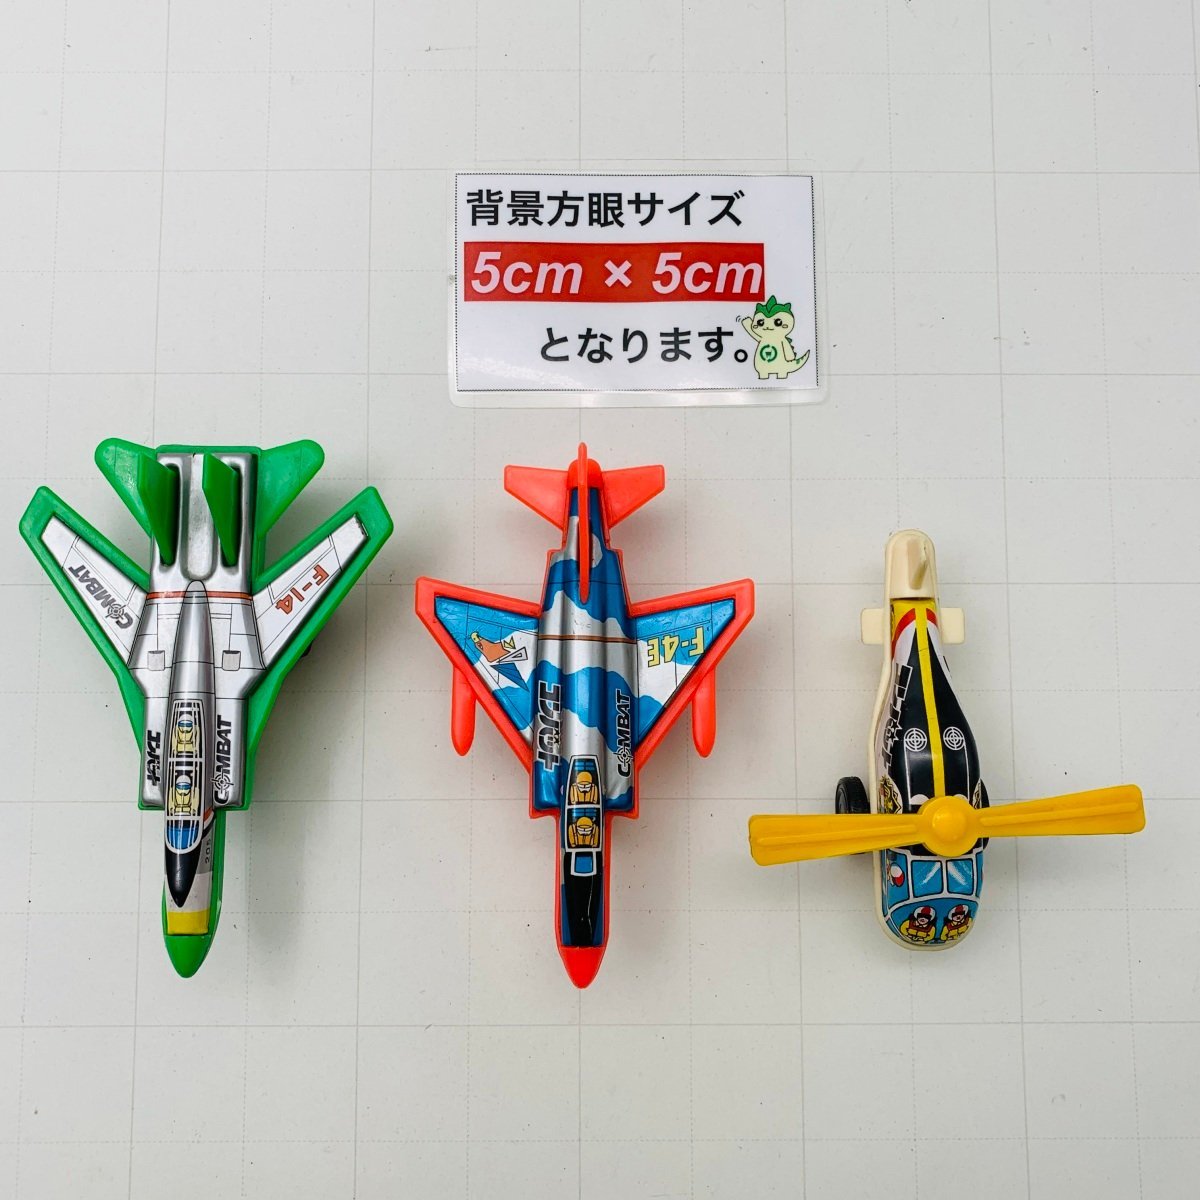 難あり中古品 日本製 MADE IN JAPAN ブリキ コンバット COMBAT 戦闘機 飛行機 レトロ おもちゃ_画像2